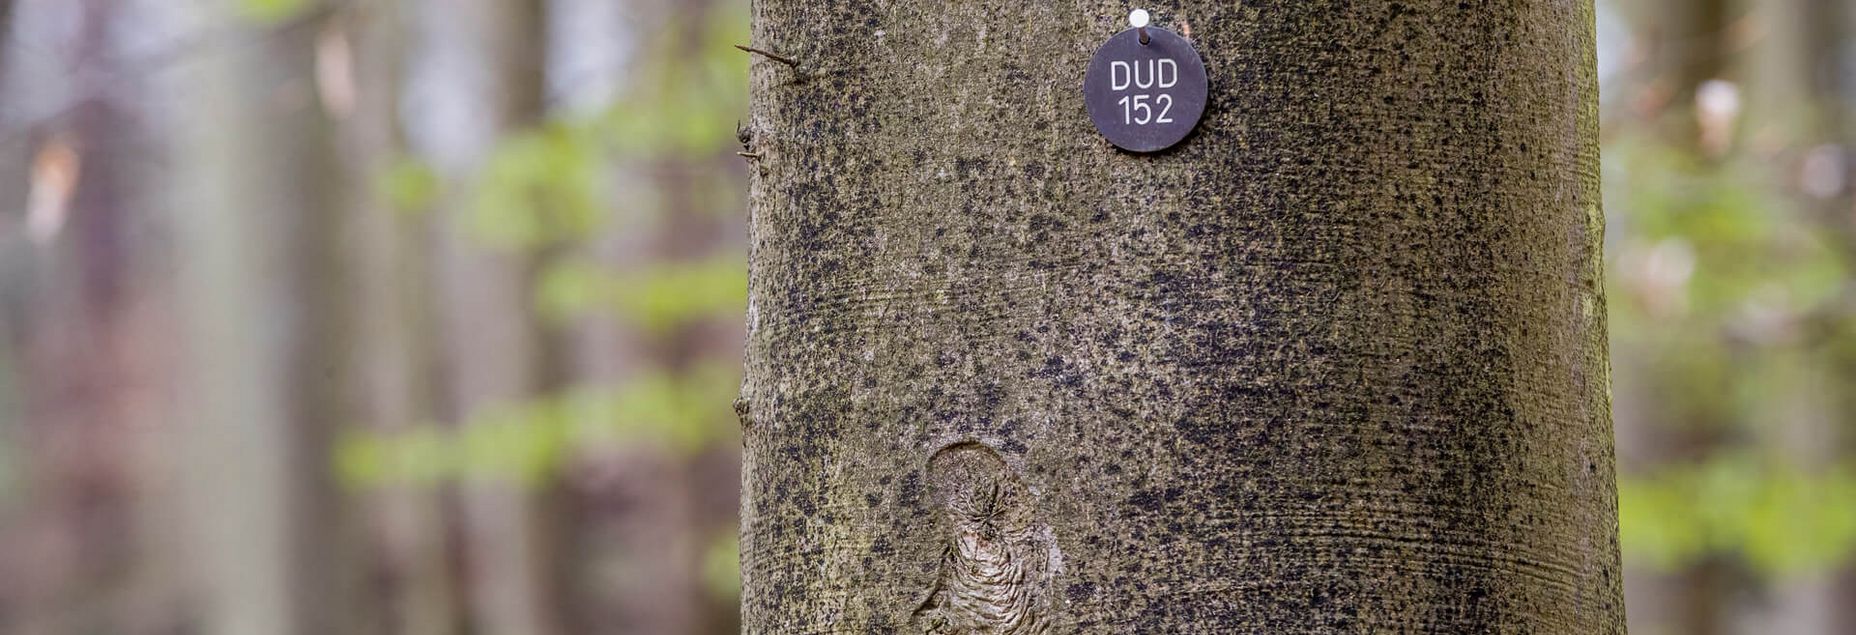 Baum DUD 152 - Plakette